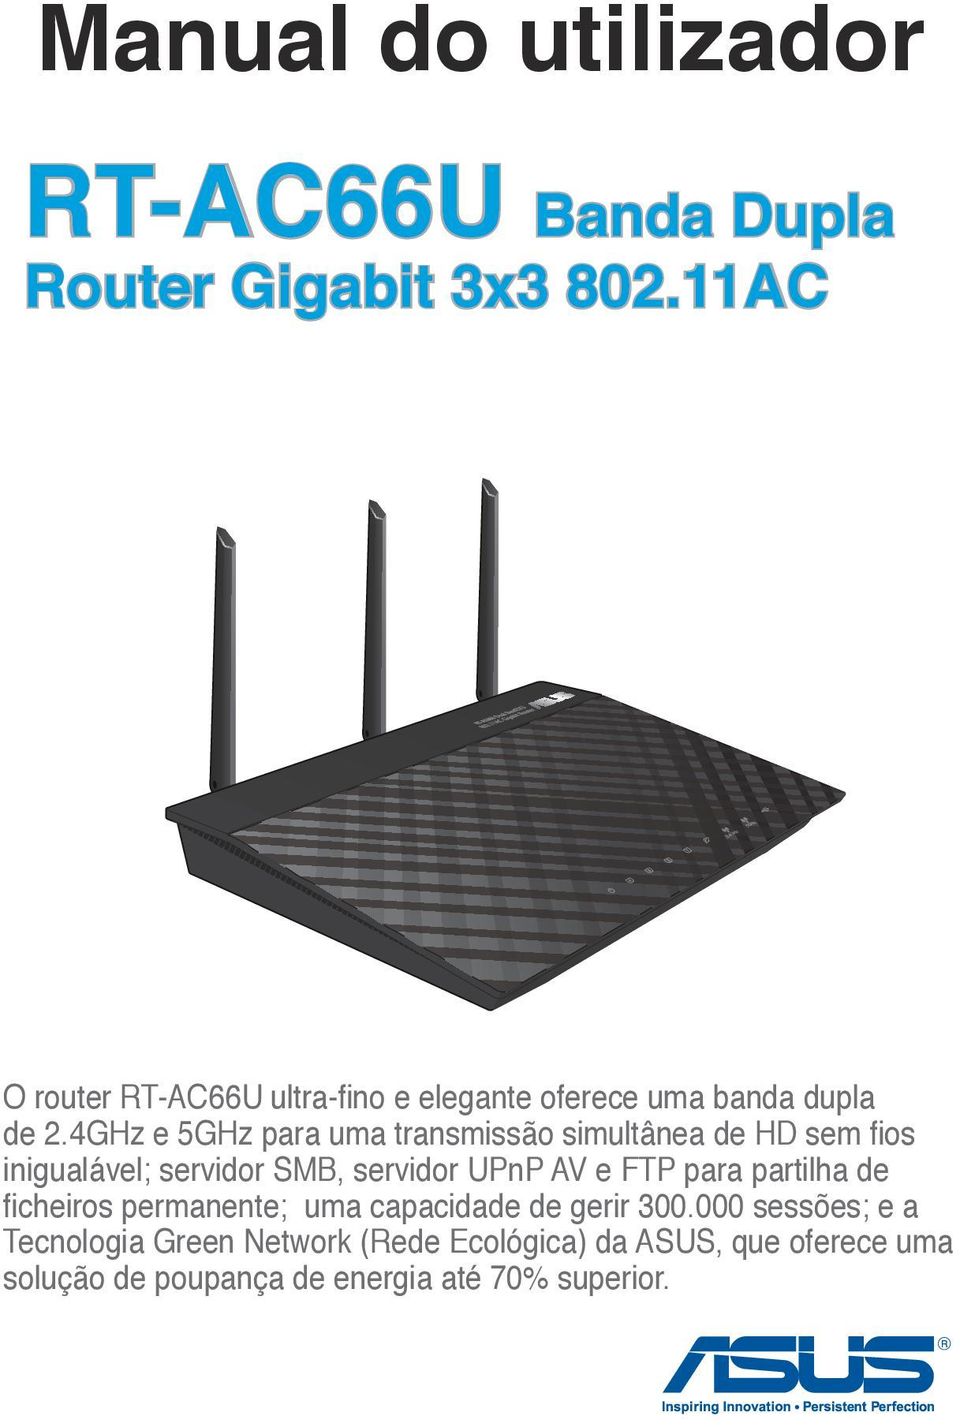 4GHz e 5GHz para uma transmissão simultânea de HD sem fios inigualável; servidor SMB, servidor UPnP AV e FTP